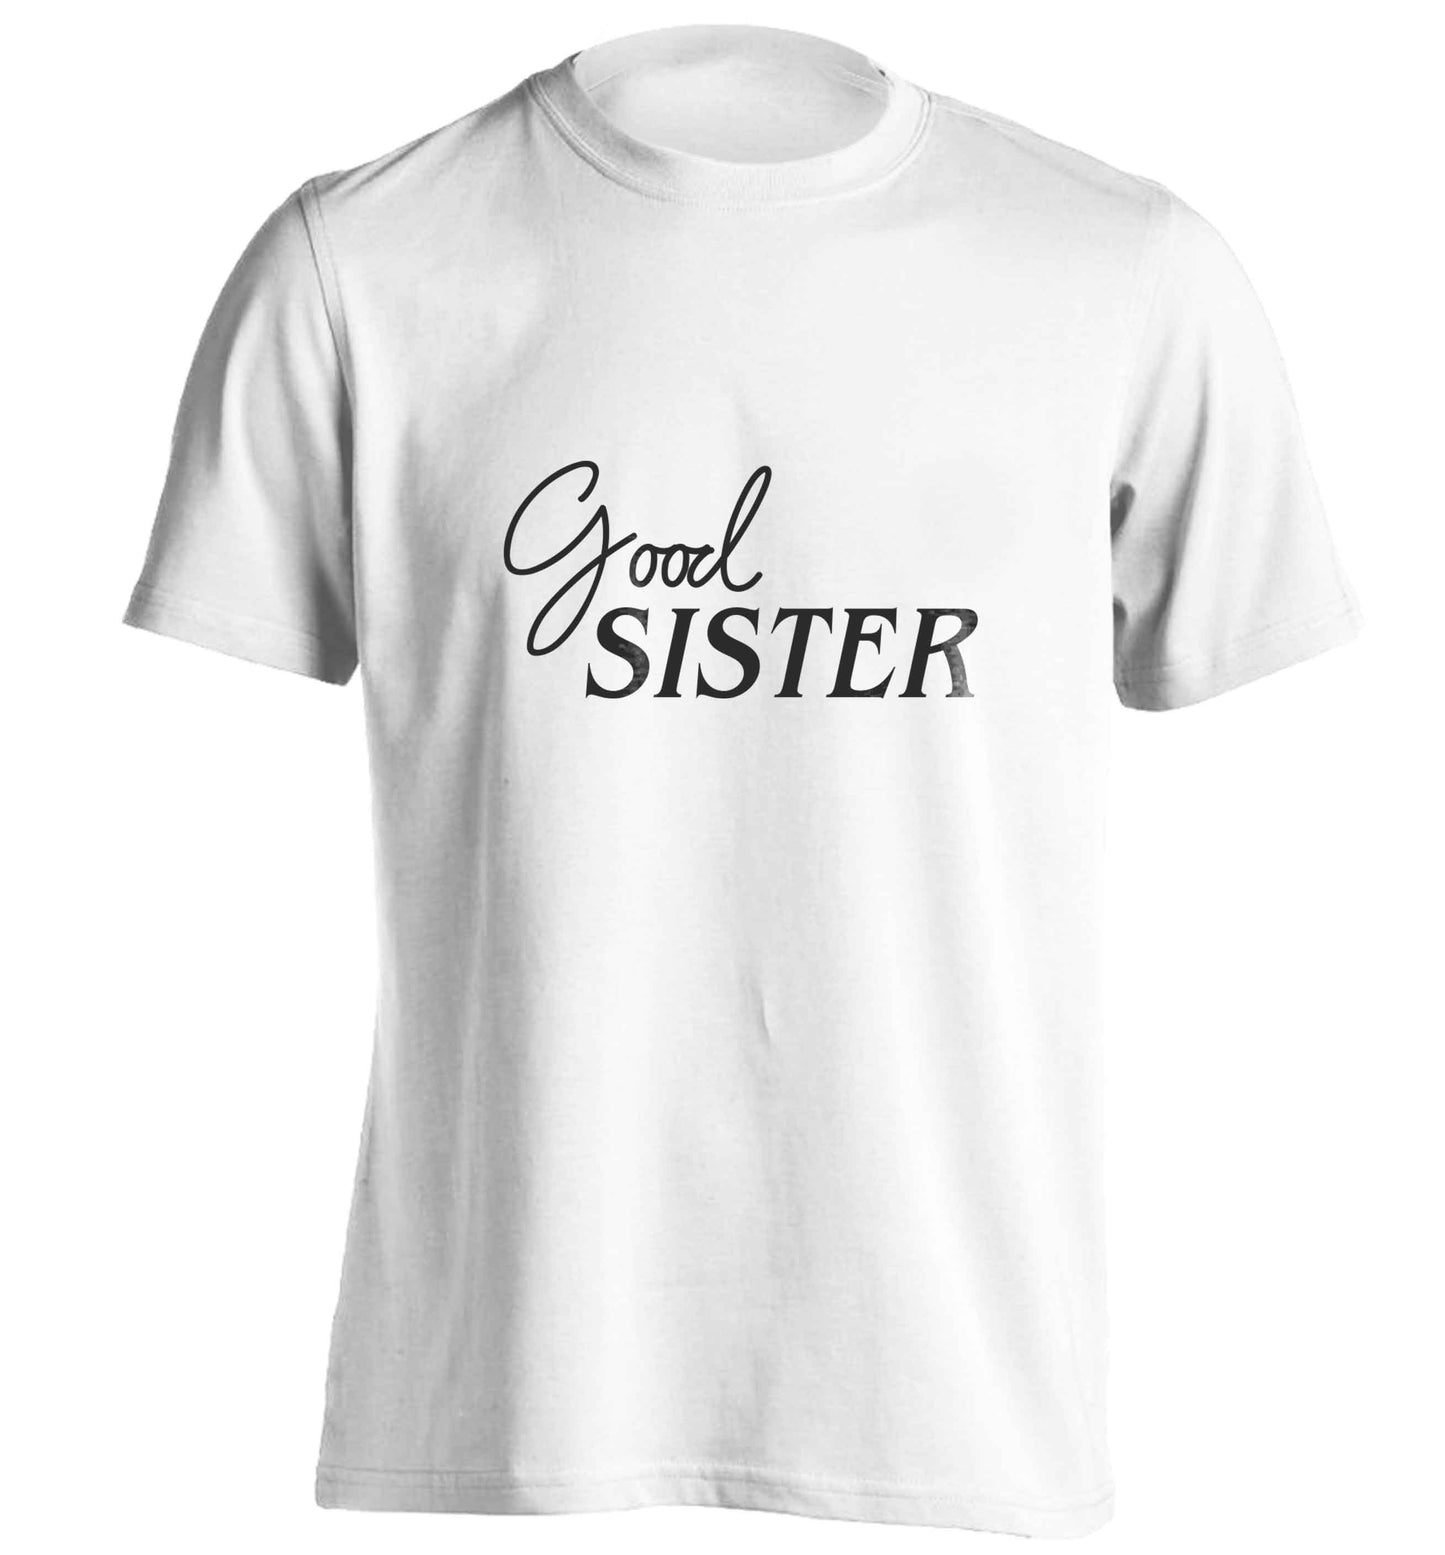 Good sister adults unisex white Tshirt 2XL